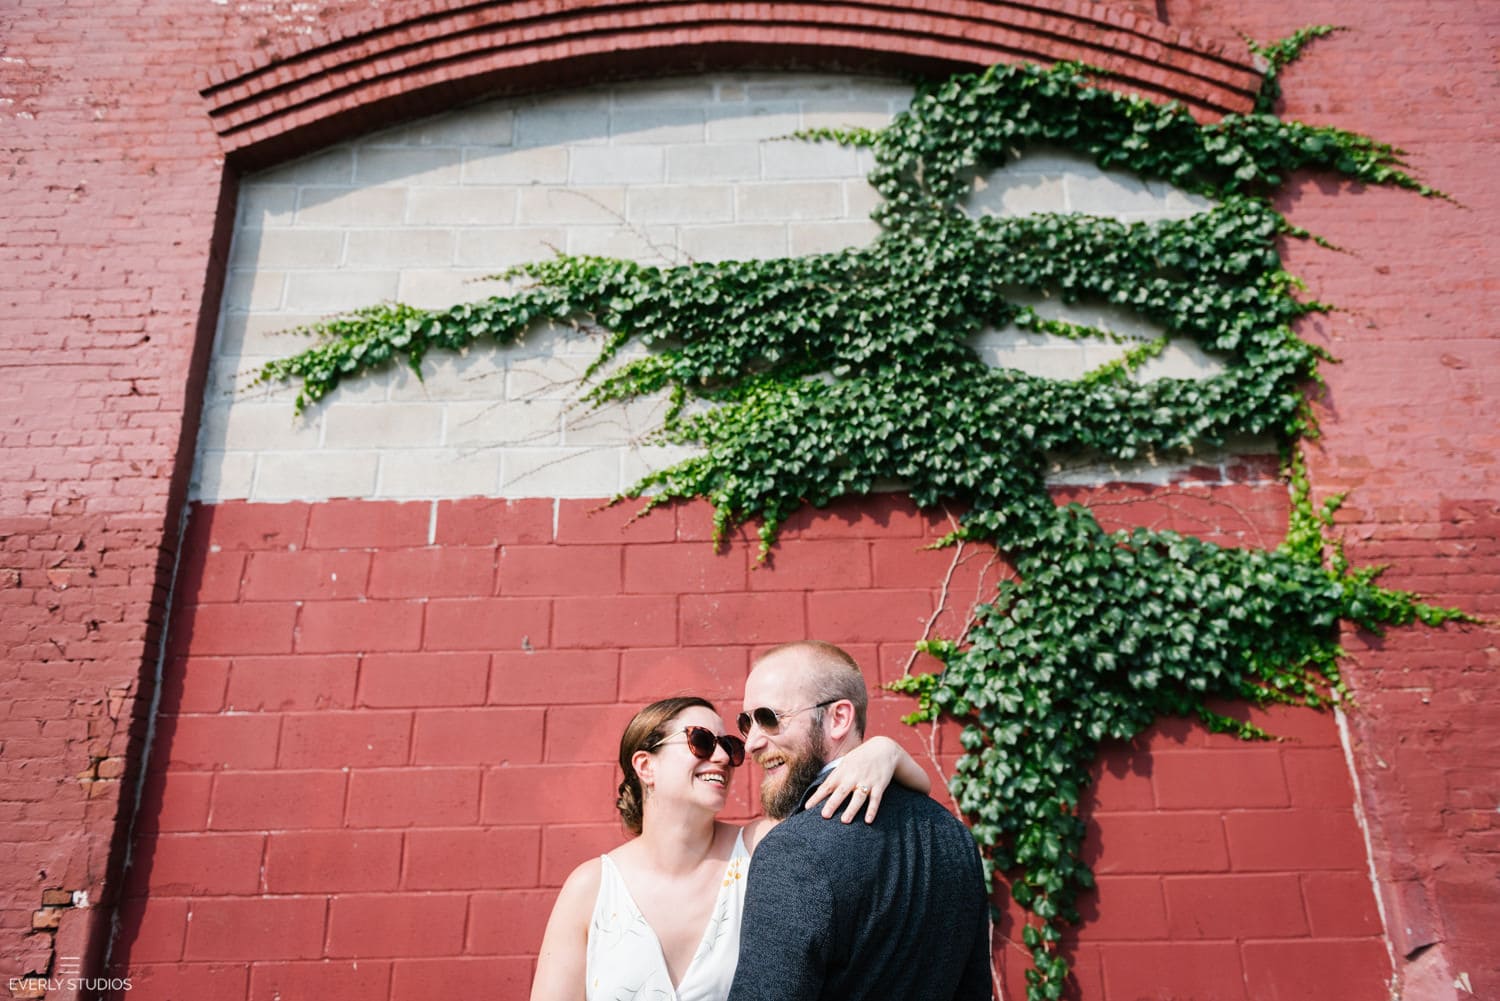 Industrial Red Hook wedding photos in Brooklyn. Photos by Brooklyn wedding photographer Everly Studios, www.everlystudios.com